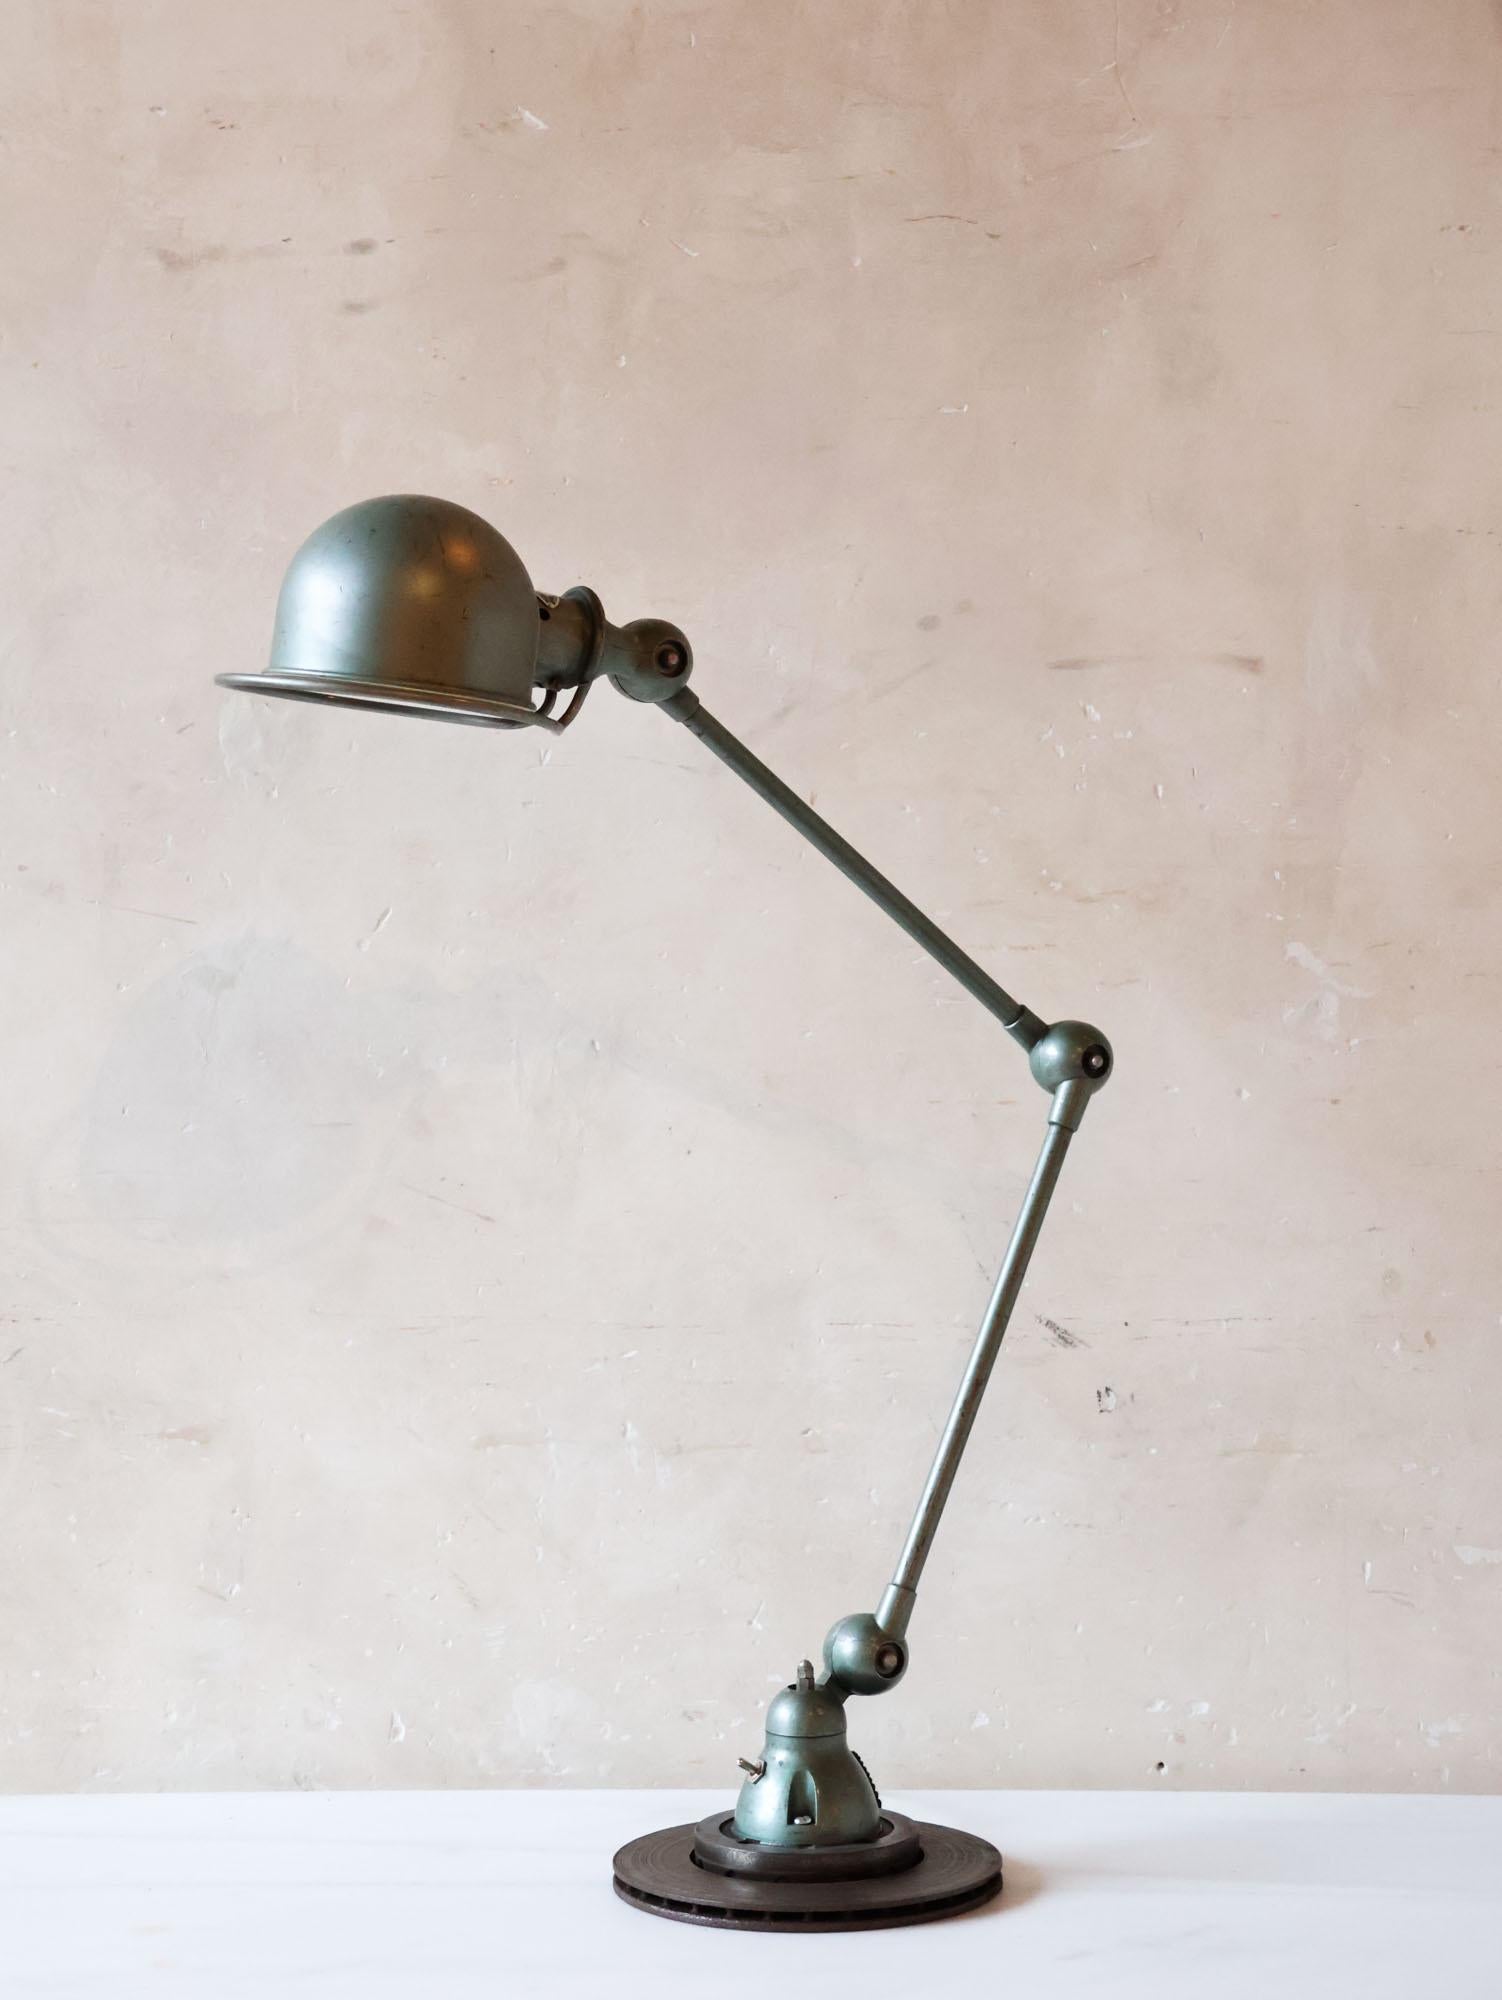 Lampe de table vintage industrielle française de la célèbre marque Jielde, accompagnée d'un cachet du fabricant. Fondée en 1950 par Jean Louis Domecq, Jielde est célèbre pour ses lampes industrielles finement travaillées. Fabriquée à la main près de